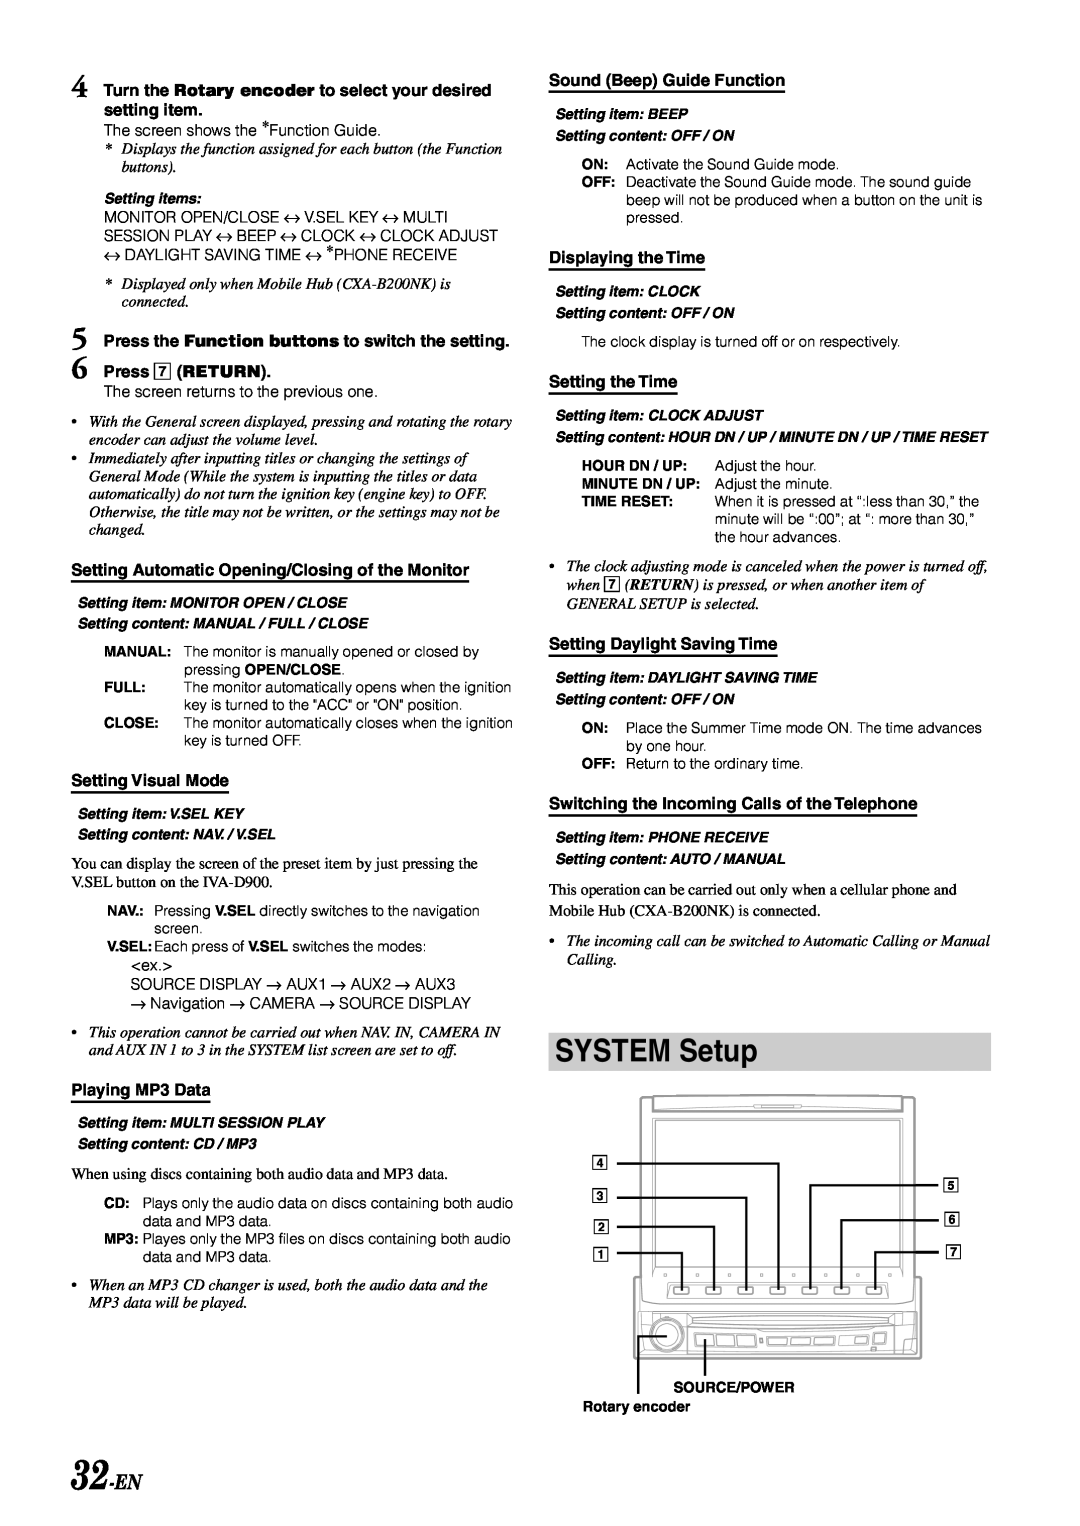 Alpine IVA-D900 owner manual SYSTEM Setup, 32-EN 